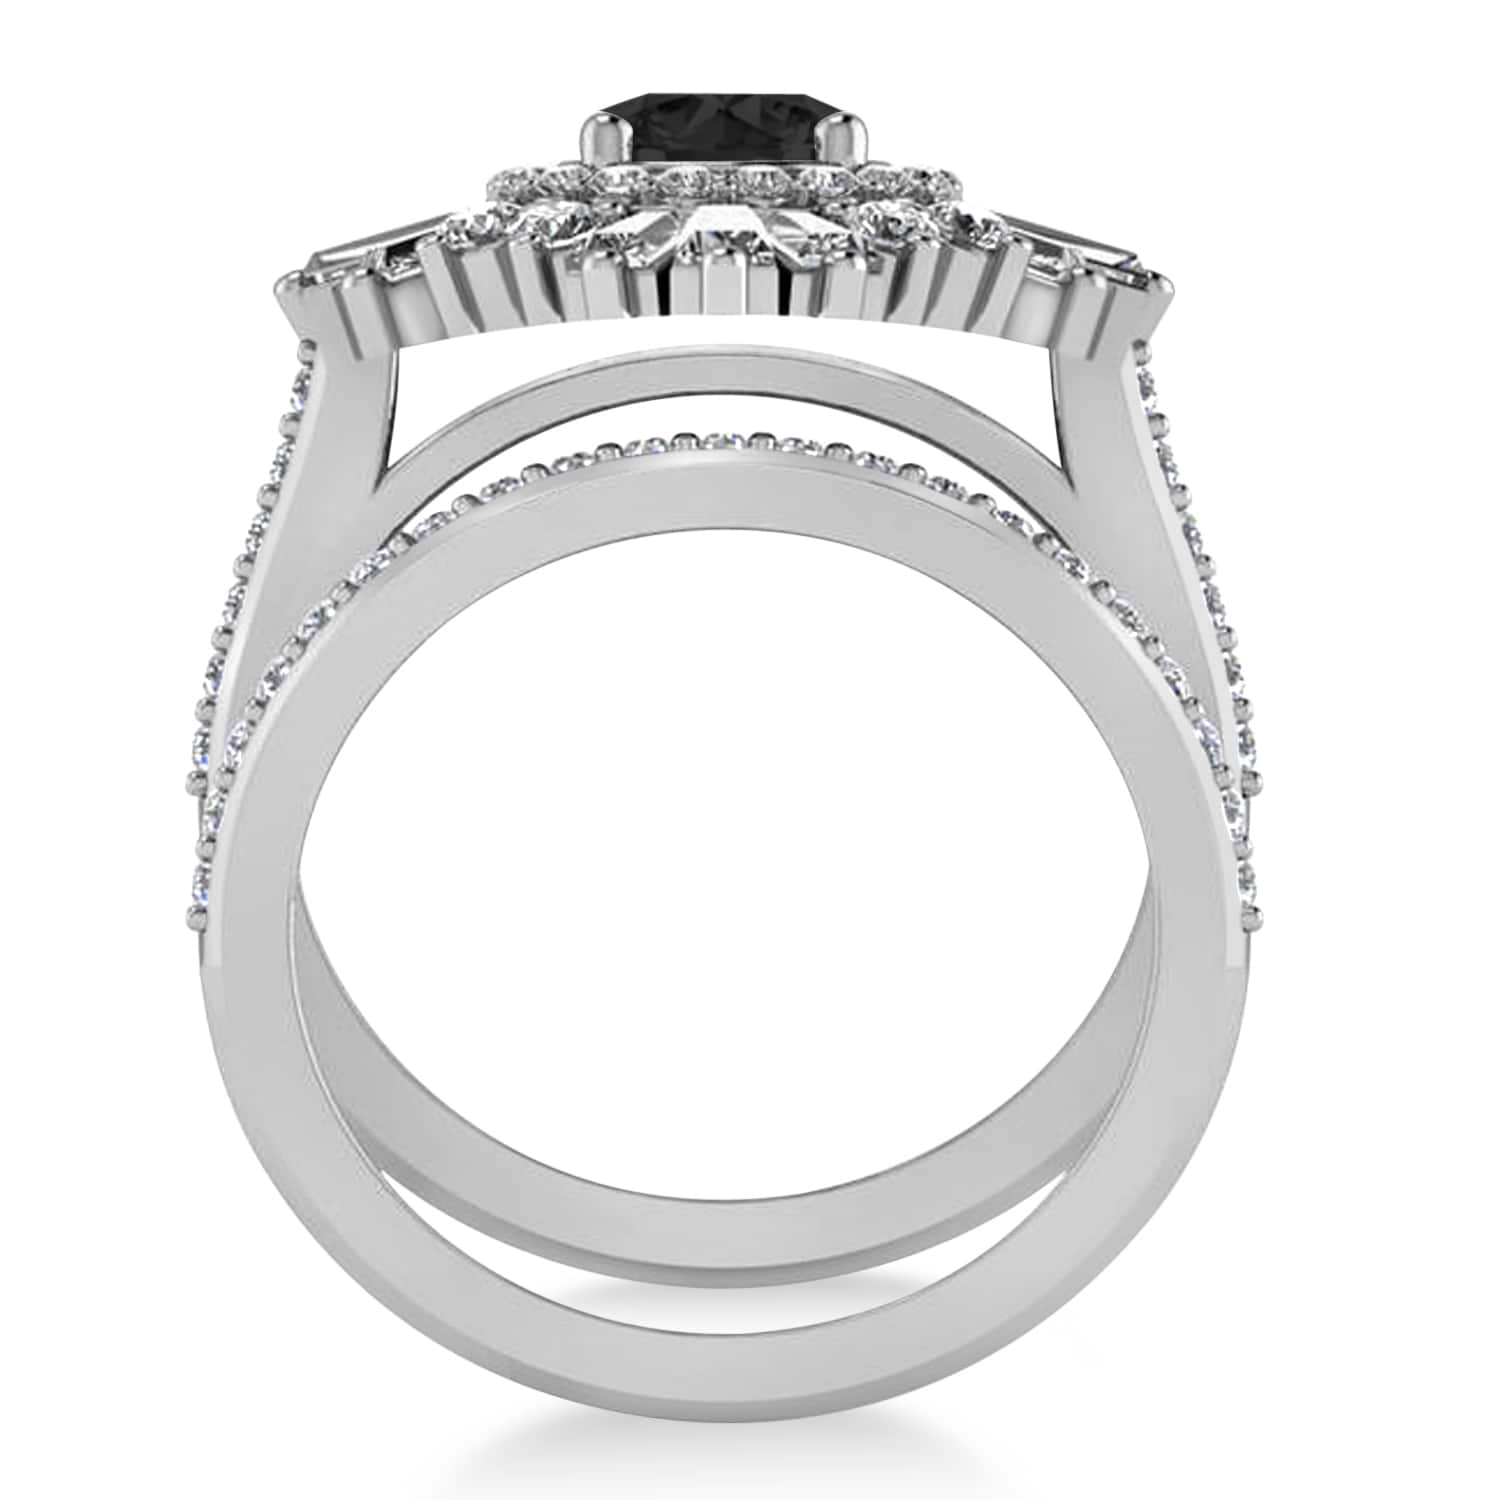 Black Diamond & Diamond Ballerina Engagement Ring 18k White Gold (2.74 ctw)